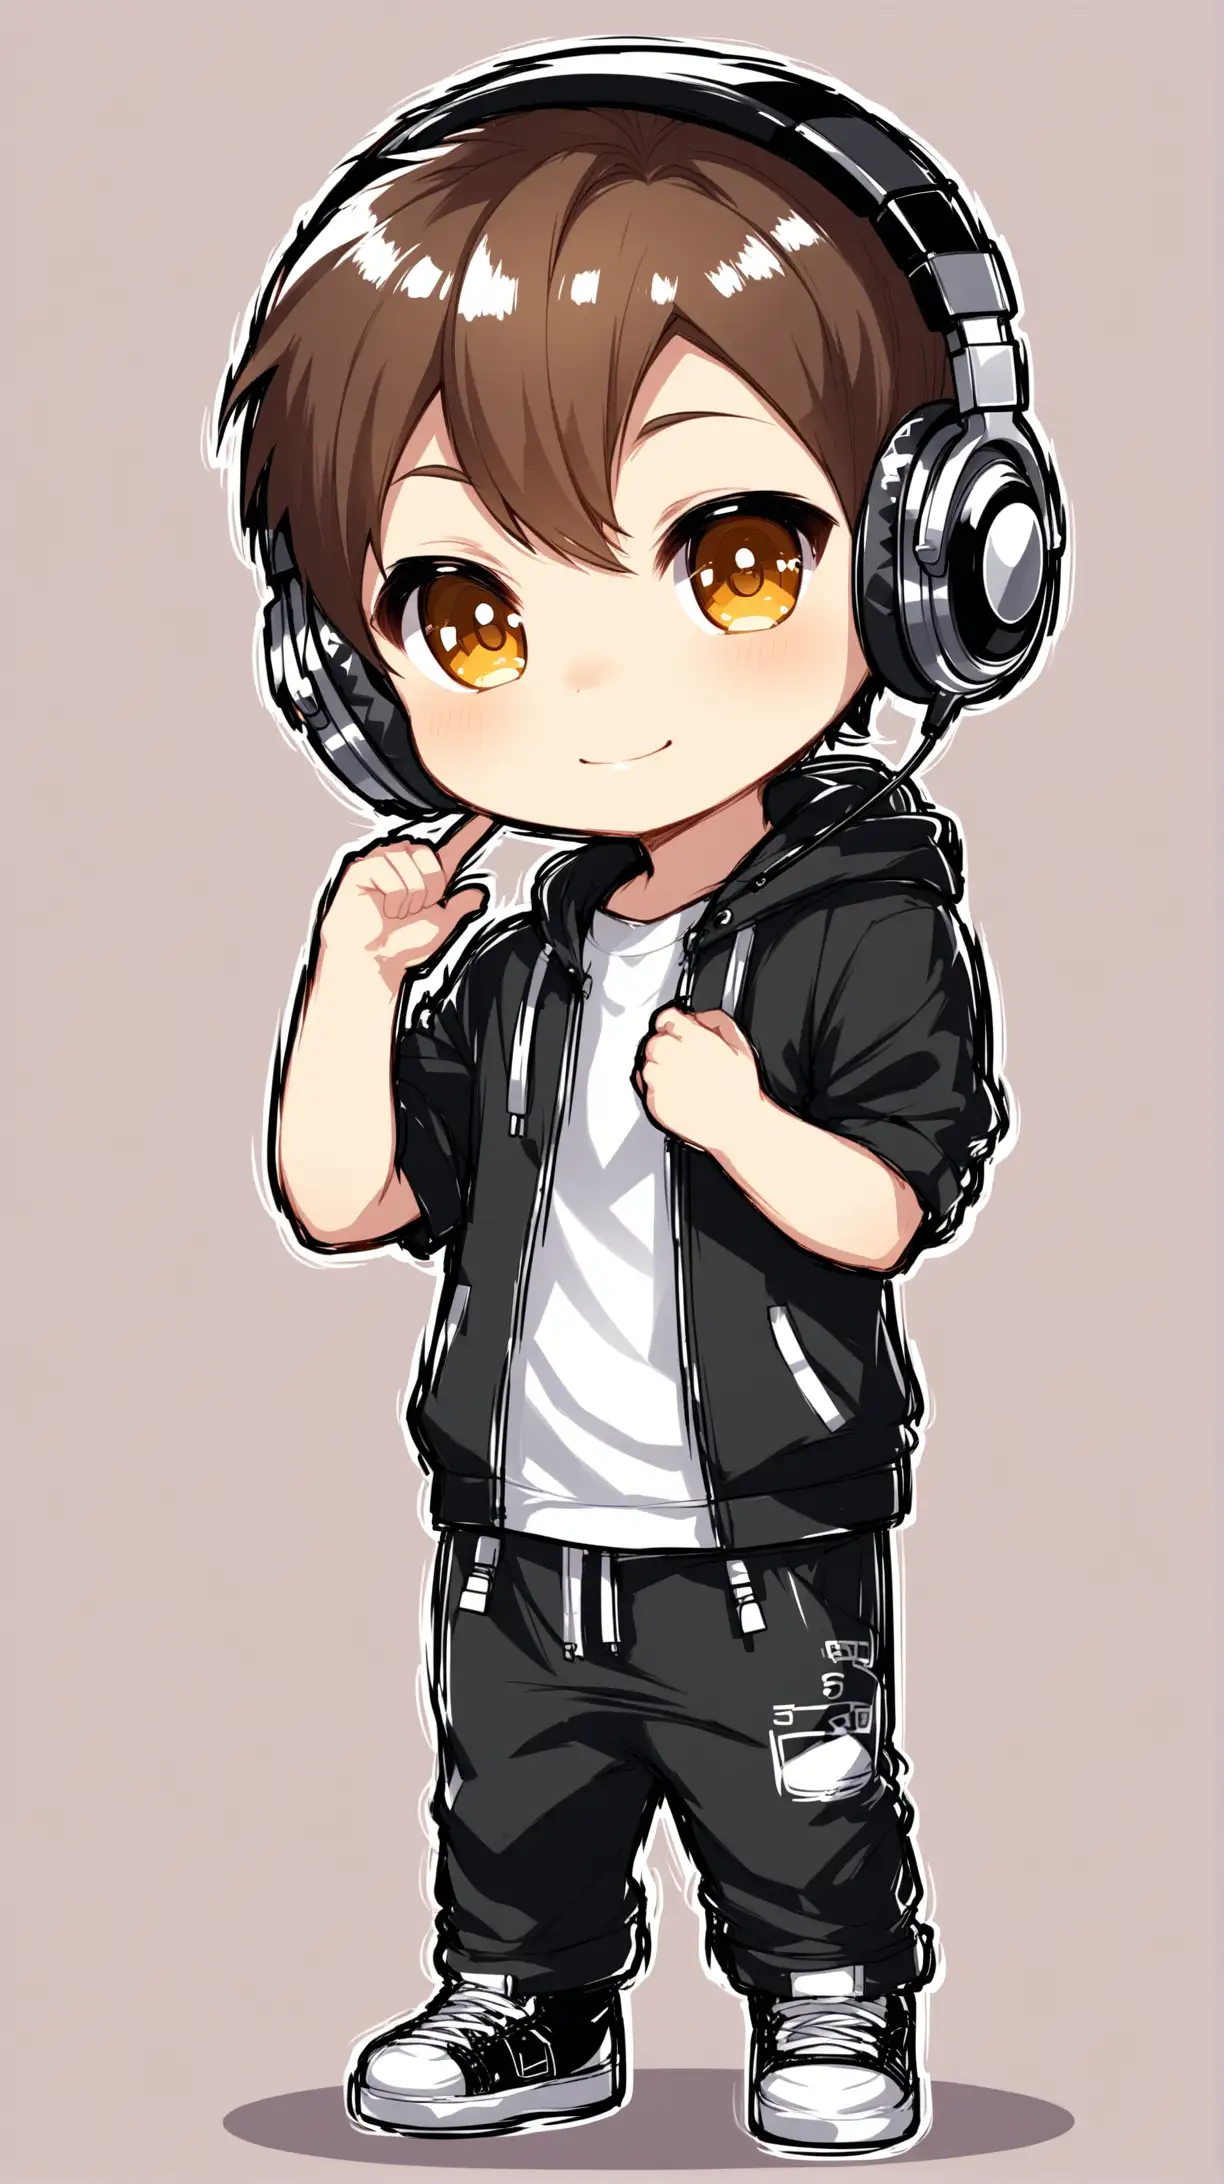 Chibi boy dj wearing headphones